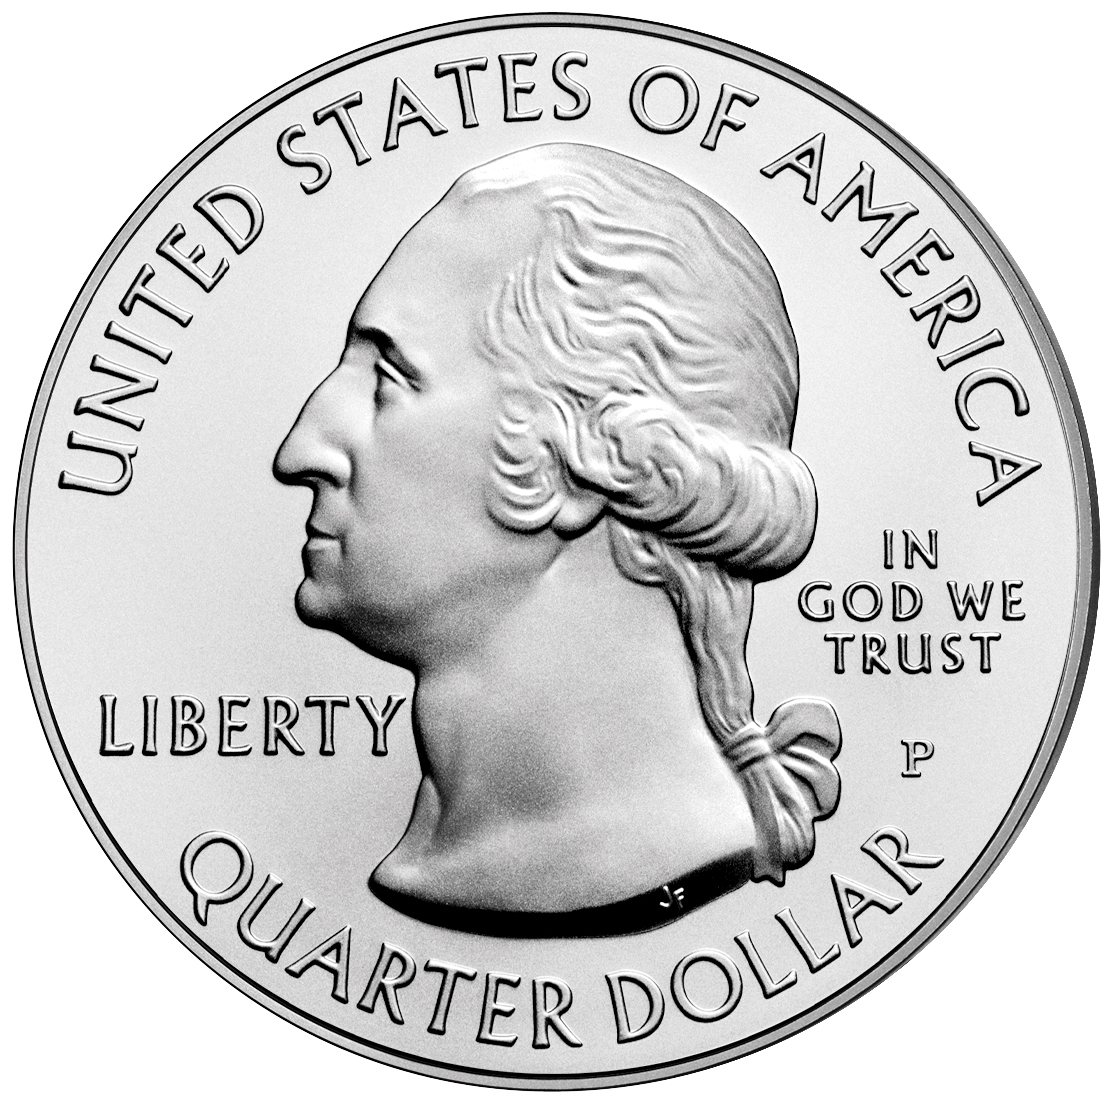 US 1/4 Dollar - Quarter 2010 P